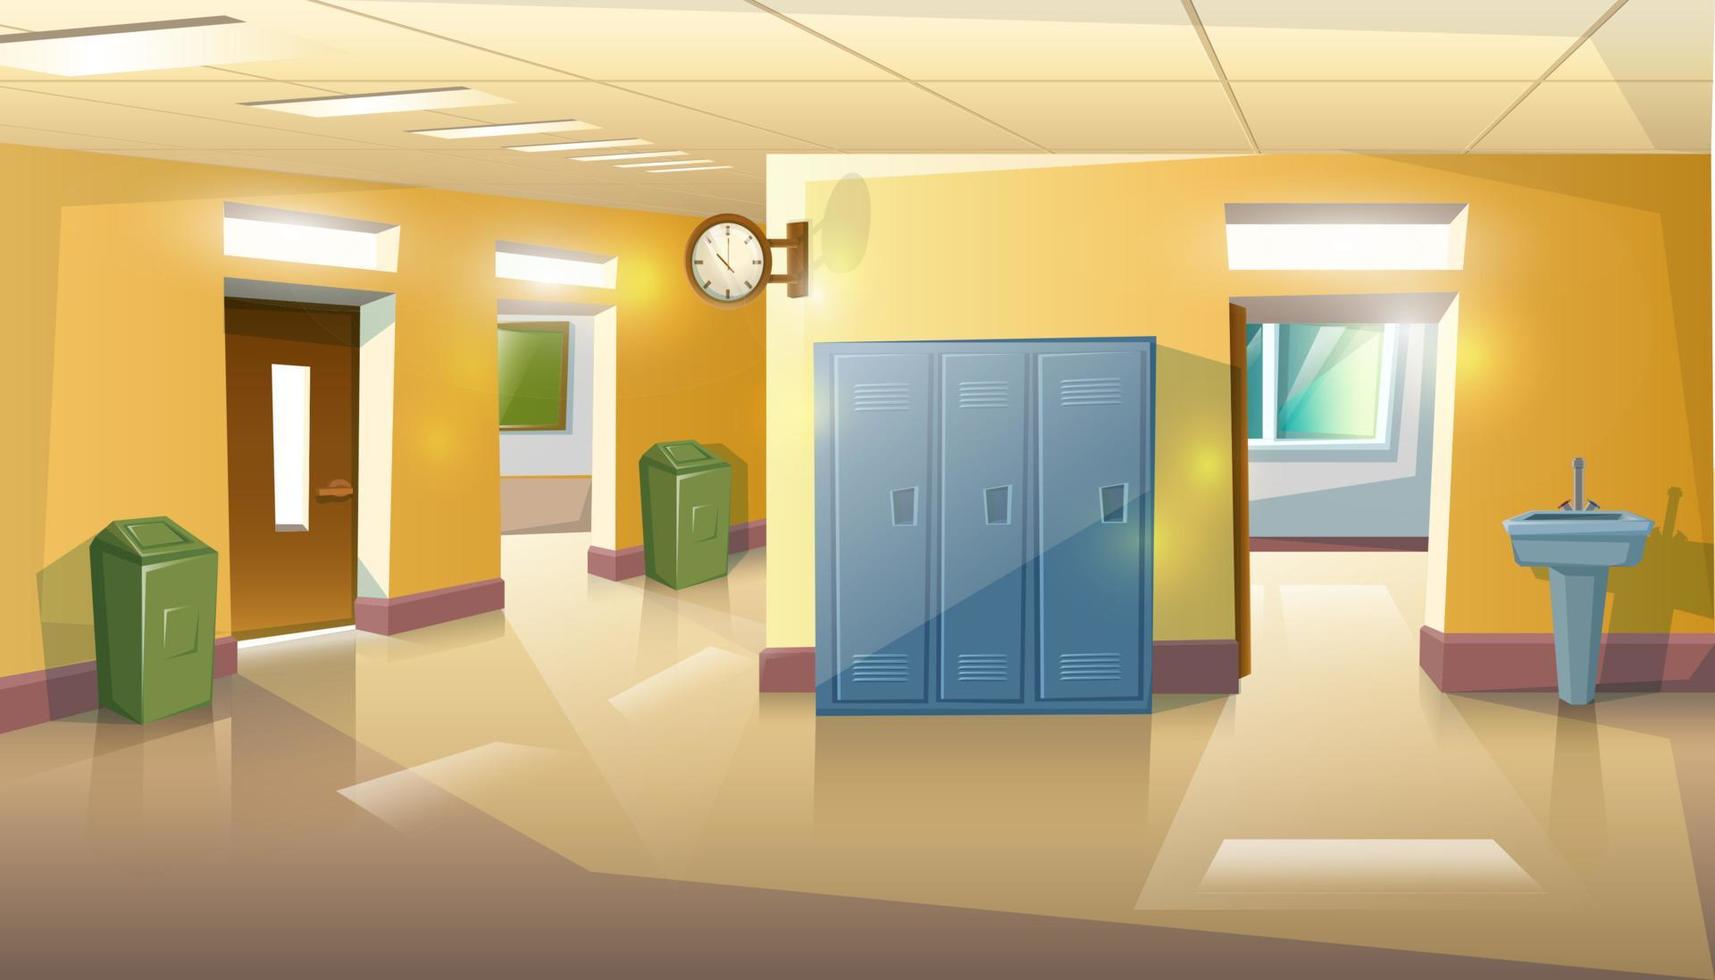 corredor de escola de estilo cartoon vetorial com portas abertas de aulas com mesas e cadeiras de estudo. vetor